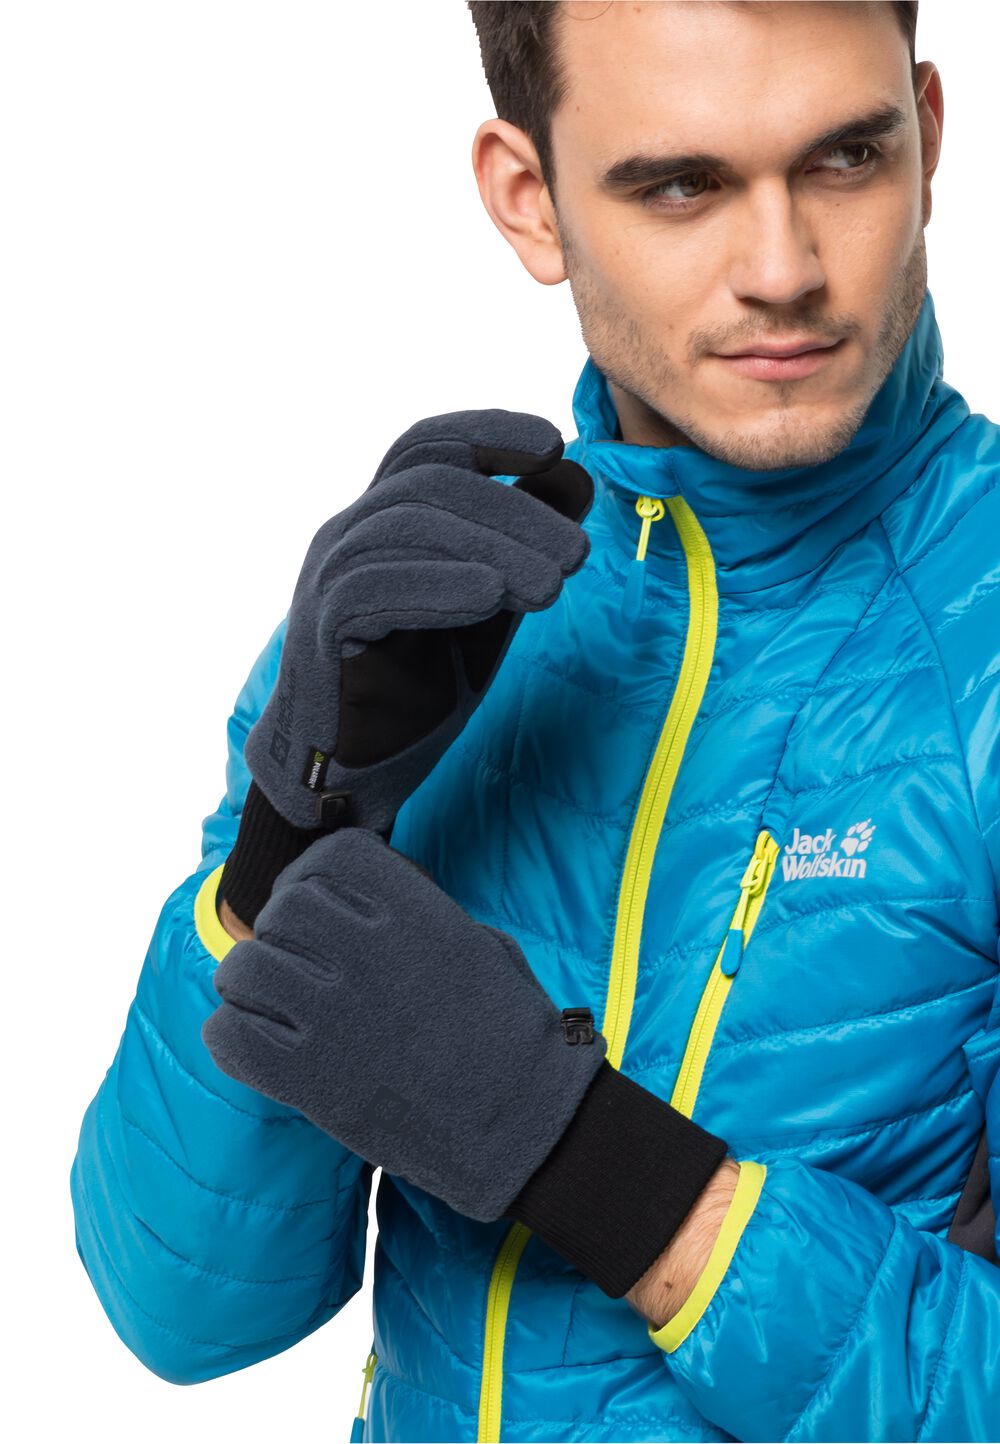 Jack Wolfskin Vertigo Glove Fleece handschoenen XS blue night blue